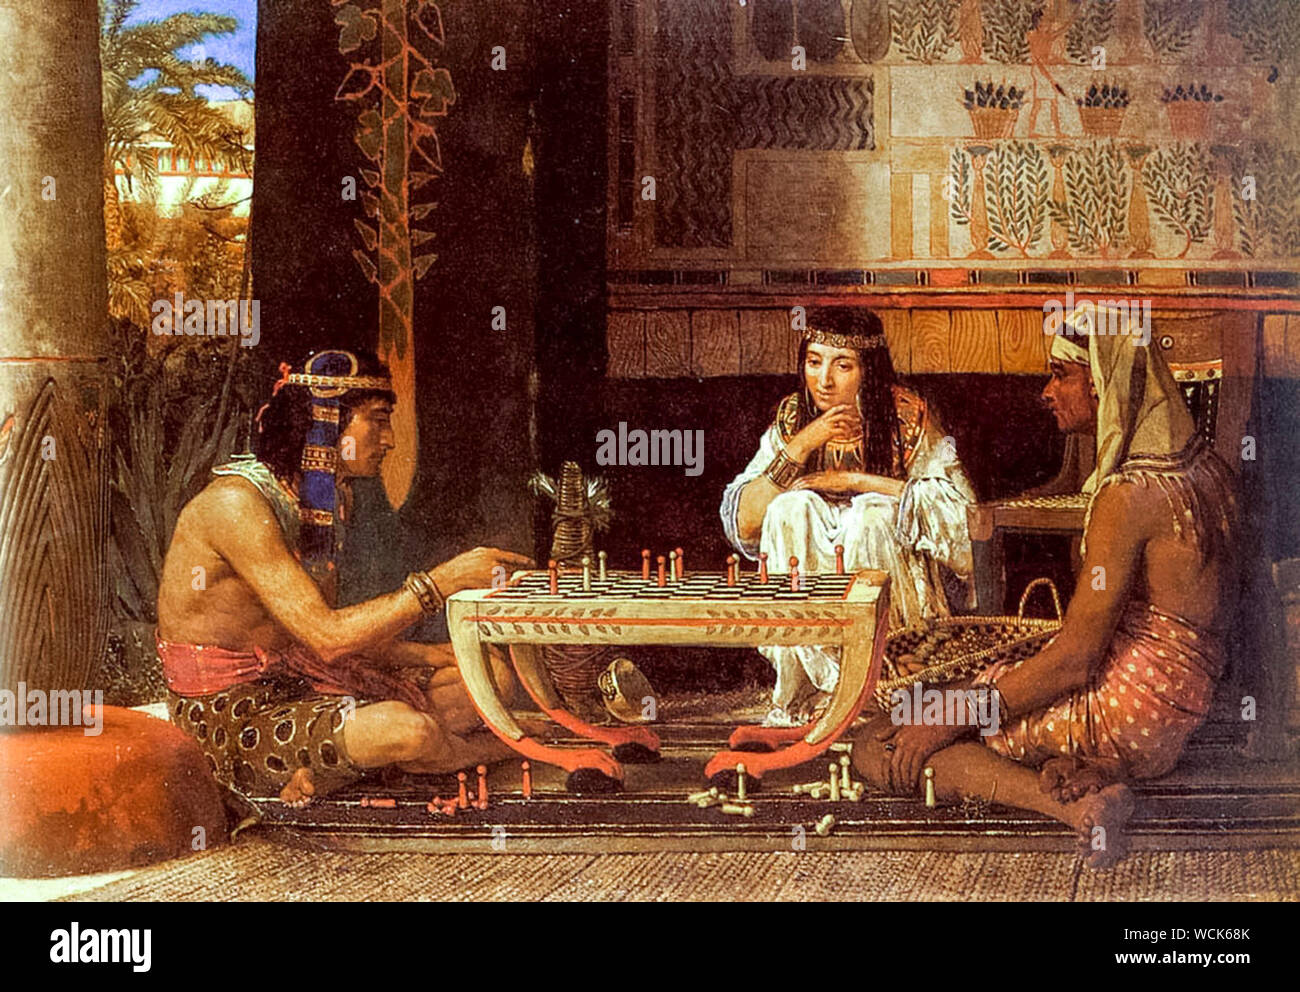 Lawrence Alma Tadema, égyptienne des joueurs d'échecs, peinture, 1879 Banque D'Images